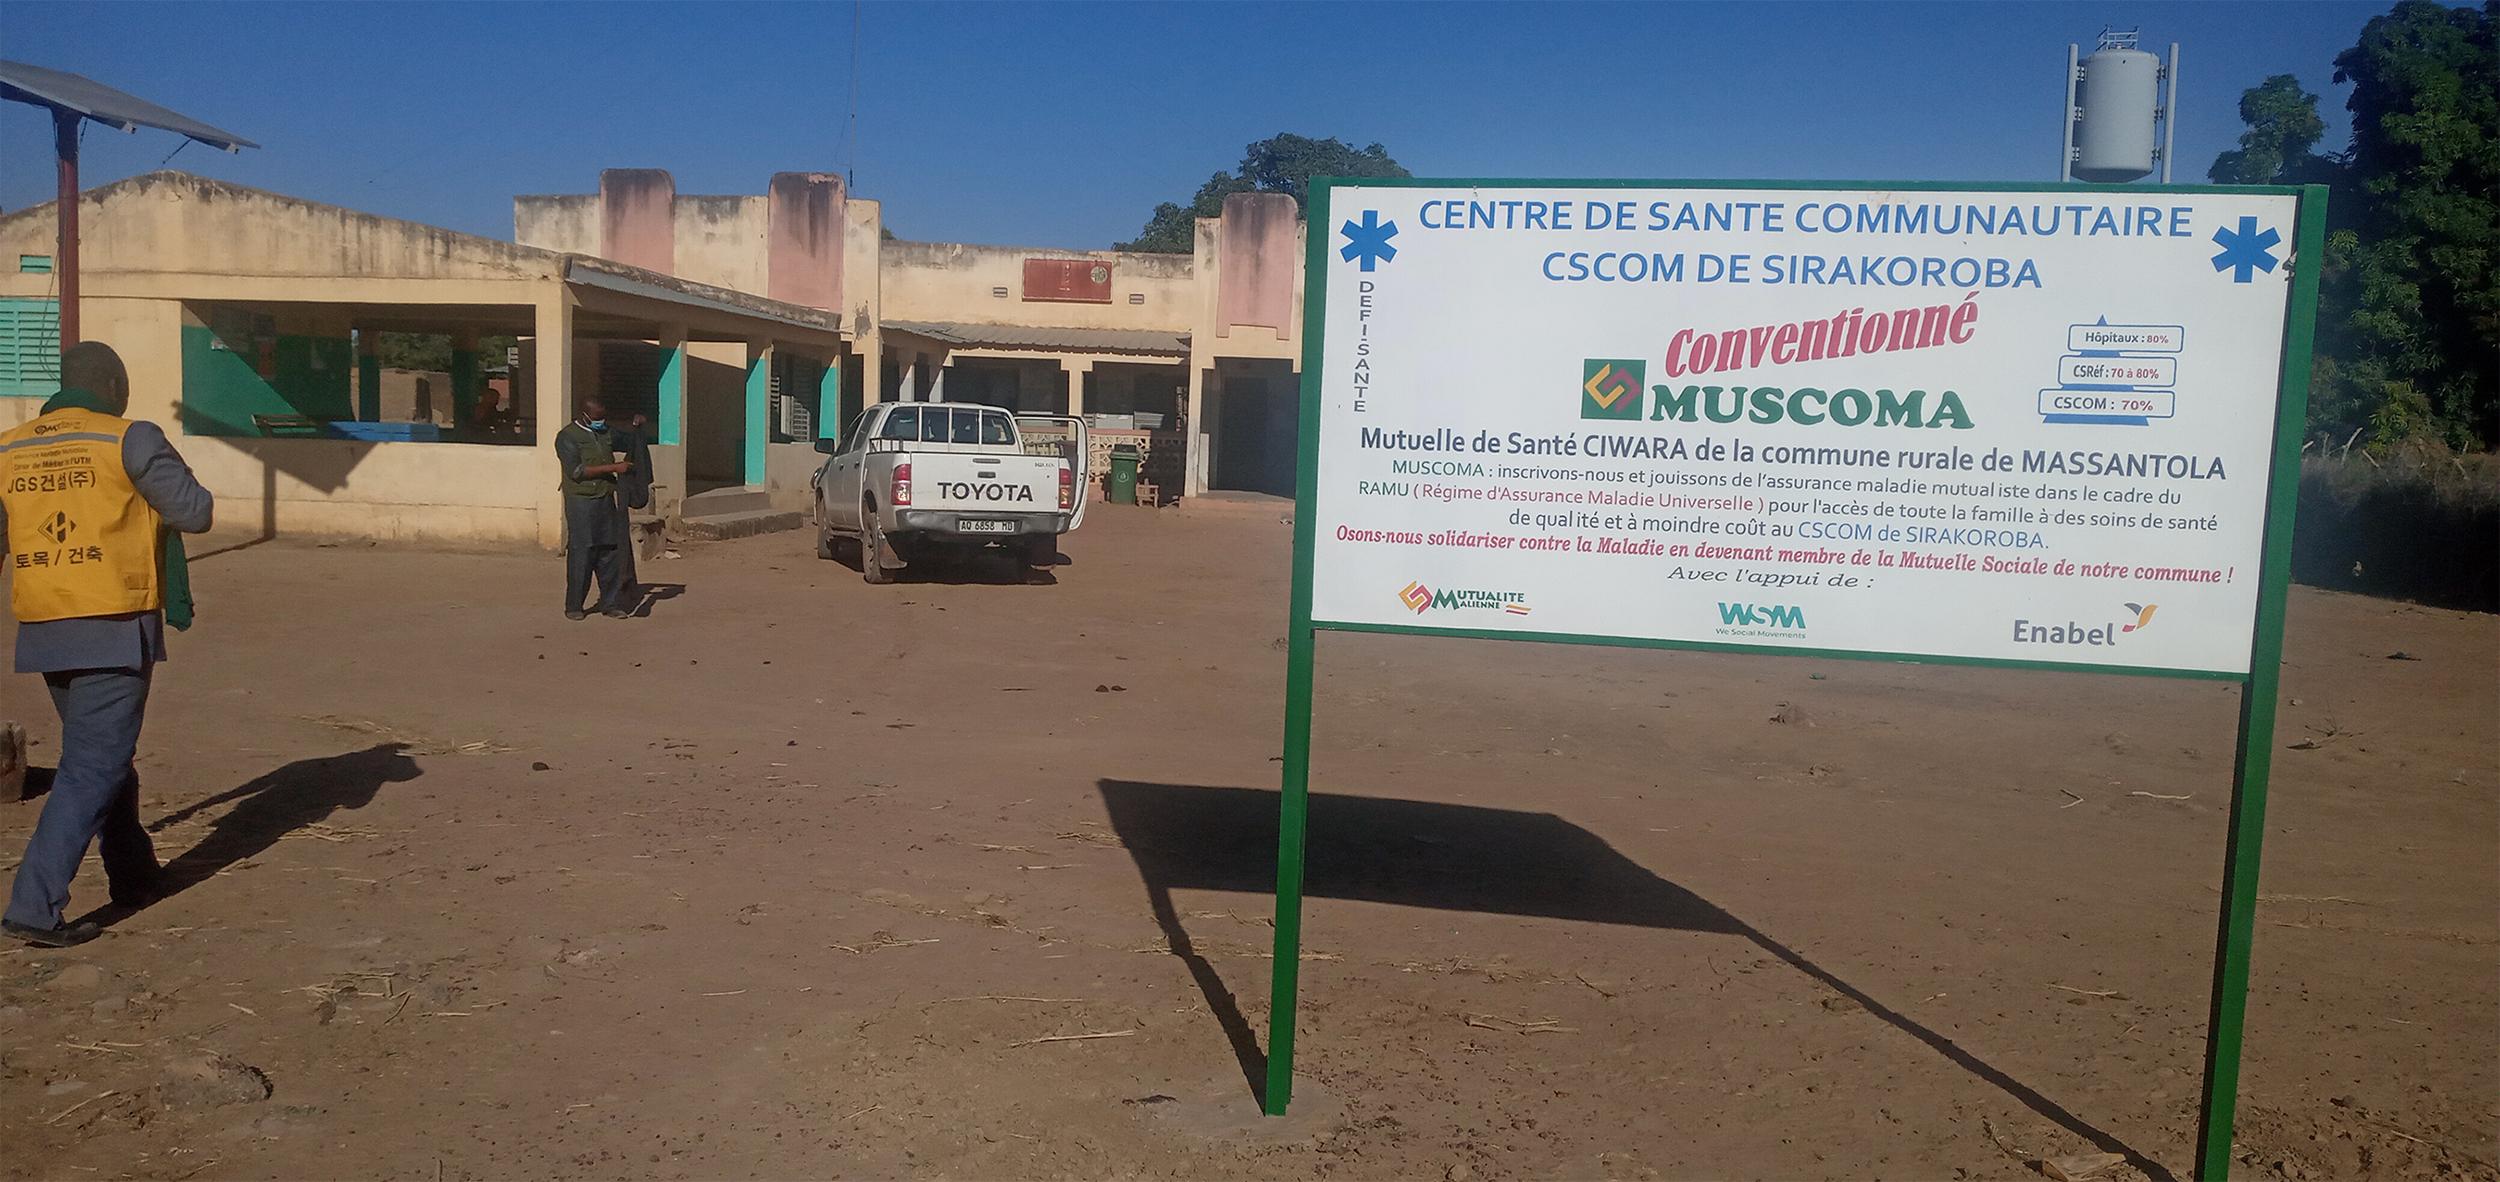 Au Mali, à travers le projet LCIANK, Enabel facilite le financement des soins en milieu rural 